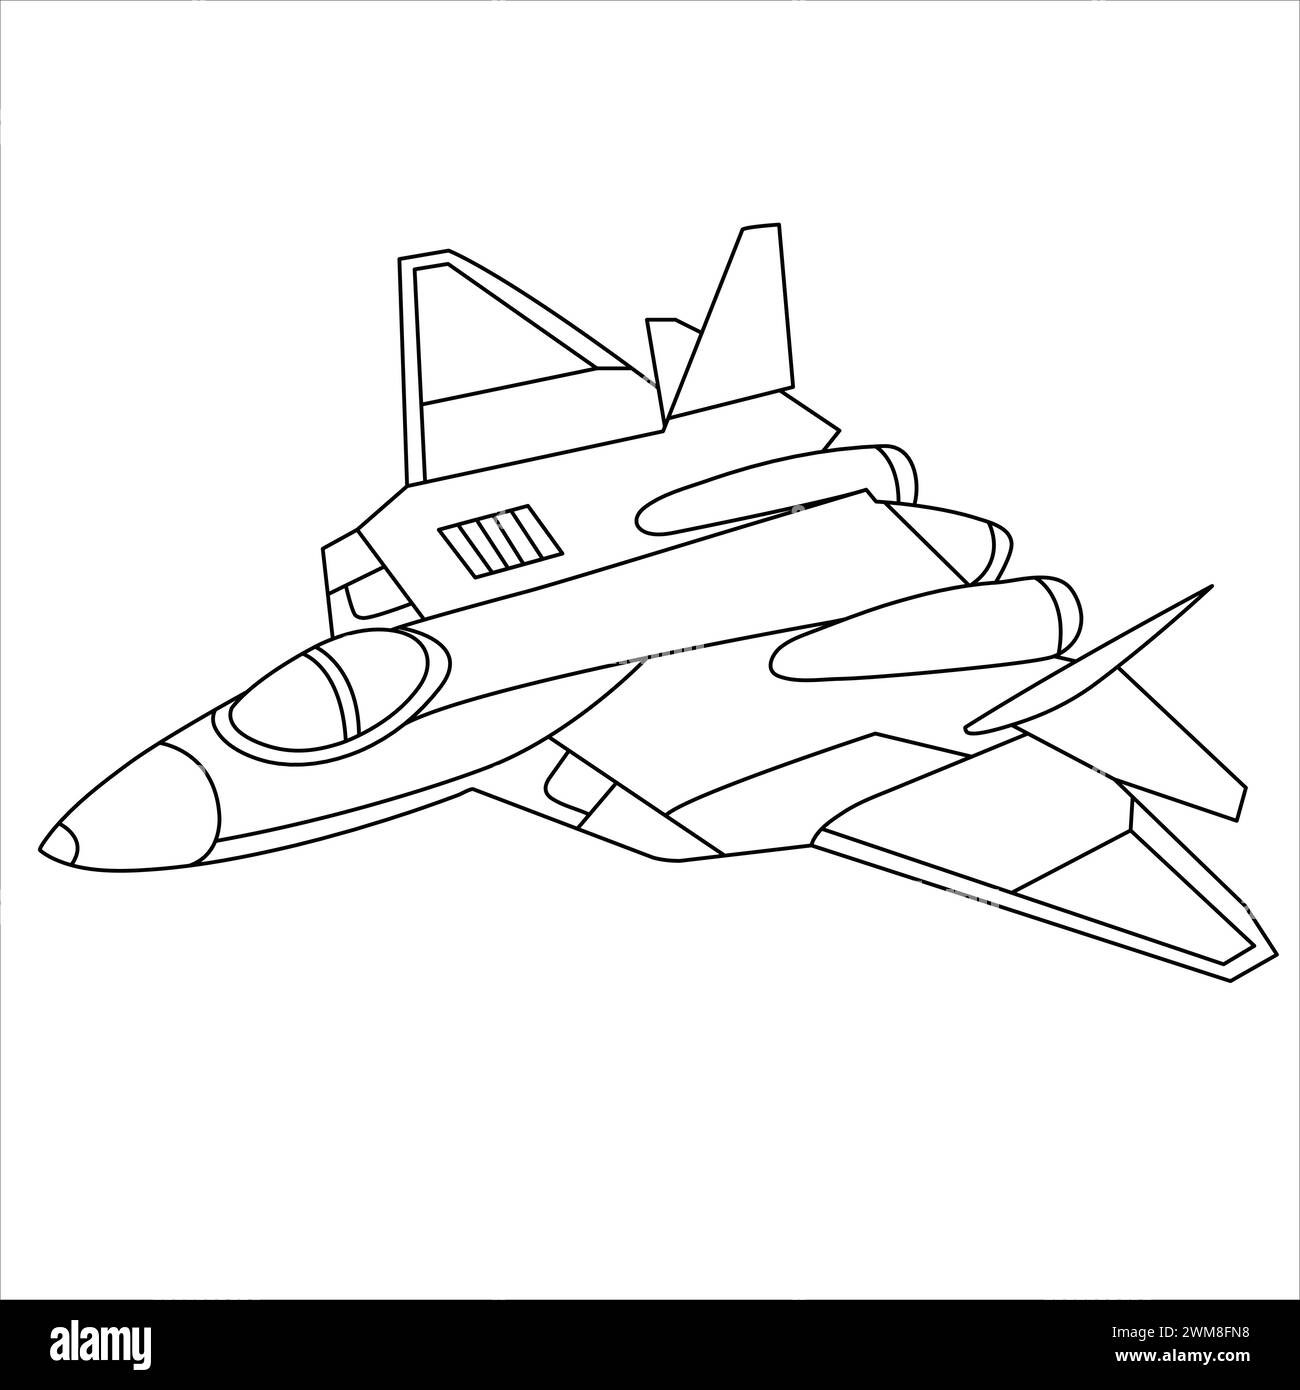 Livre de coloriage d'avions militaires pour enfants et adultes. Design Air Fighter Outline. Avion de dessin animé isolé sur fond blanc. Tirage de chasseur Jet Illustration de Vecteur